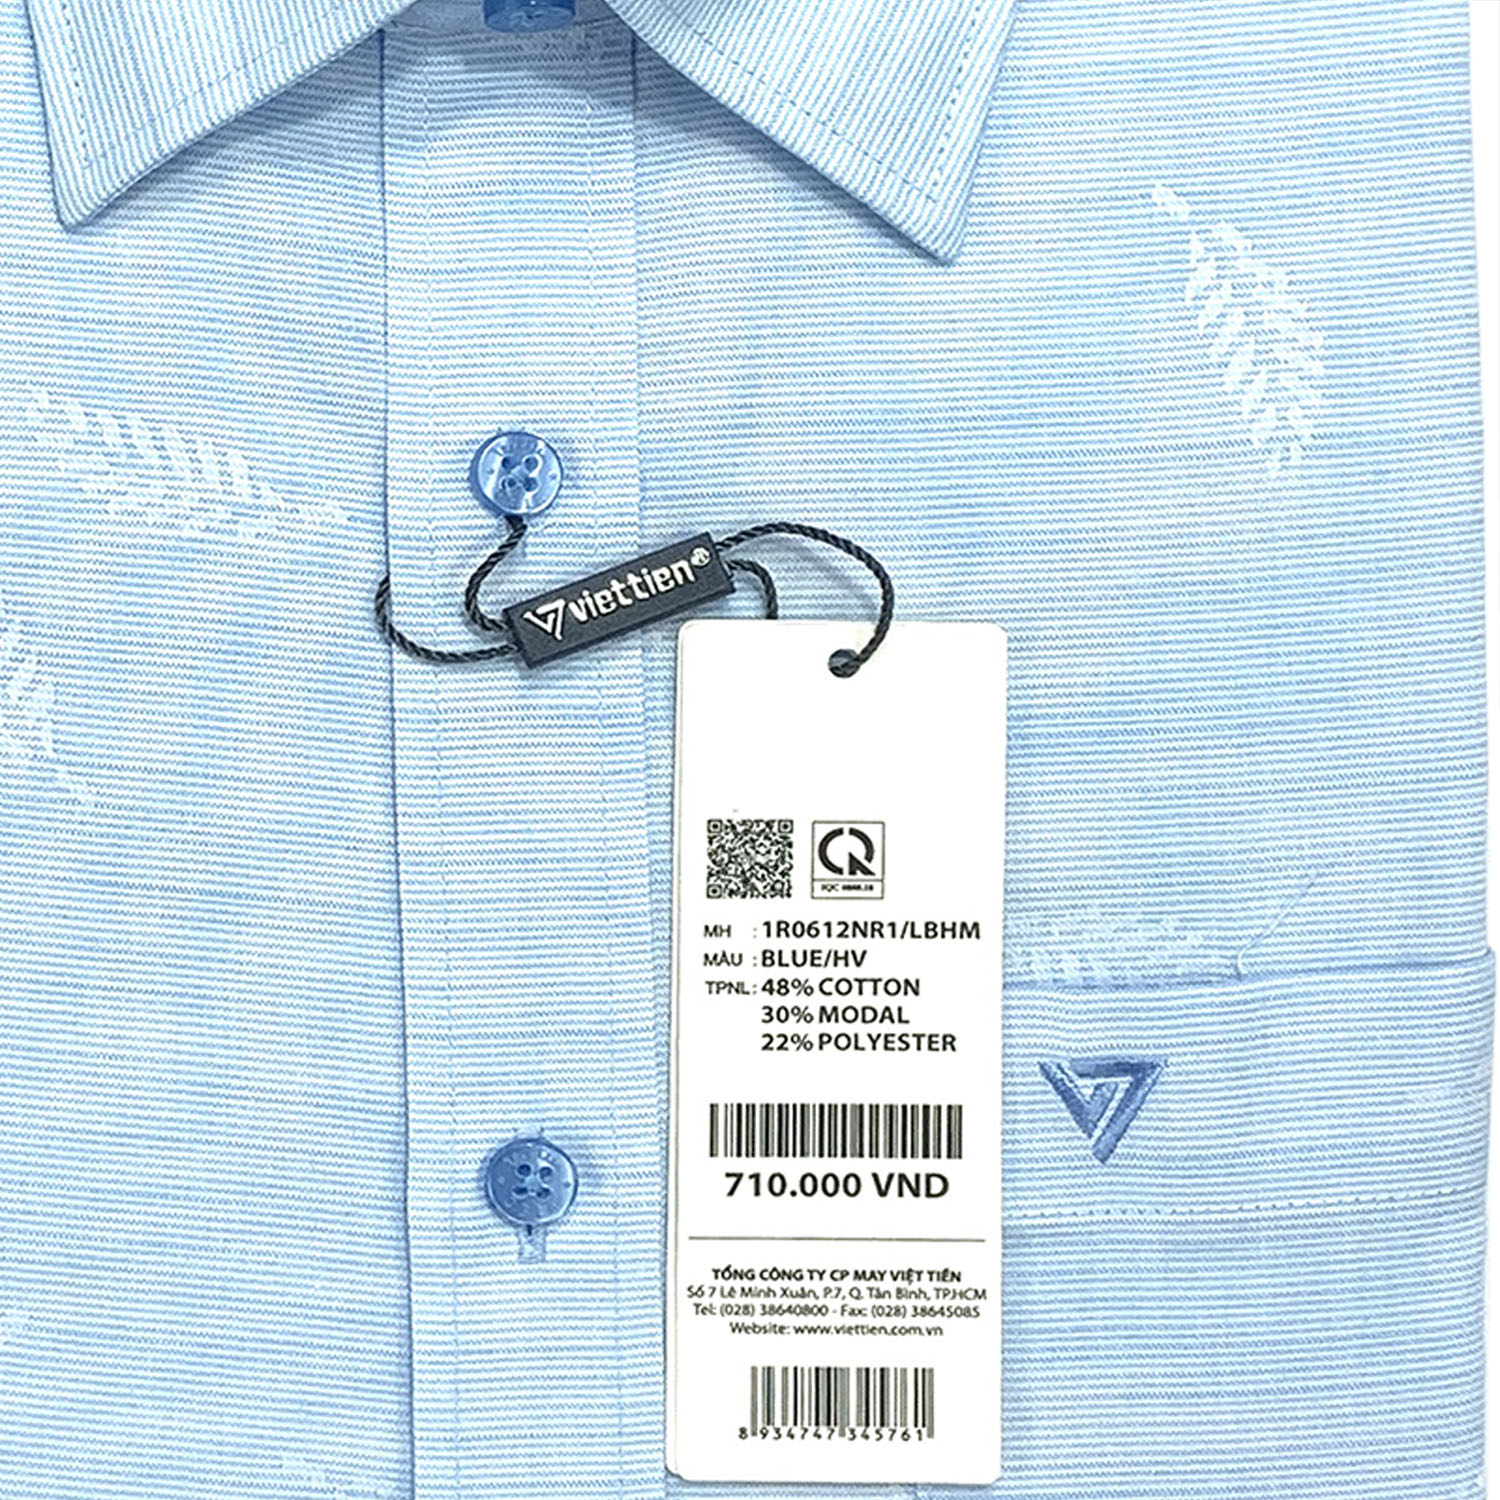 Viettien - Áo sơ mi nam dài tay họa tiết 1R0612 regular dáng rộng - áo sơ mi công sở Việt Tiến